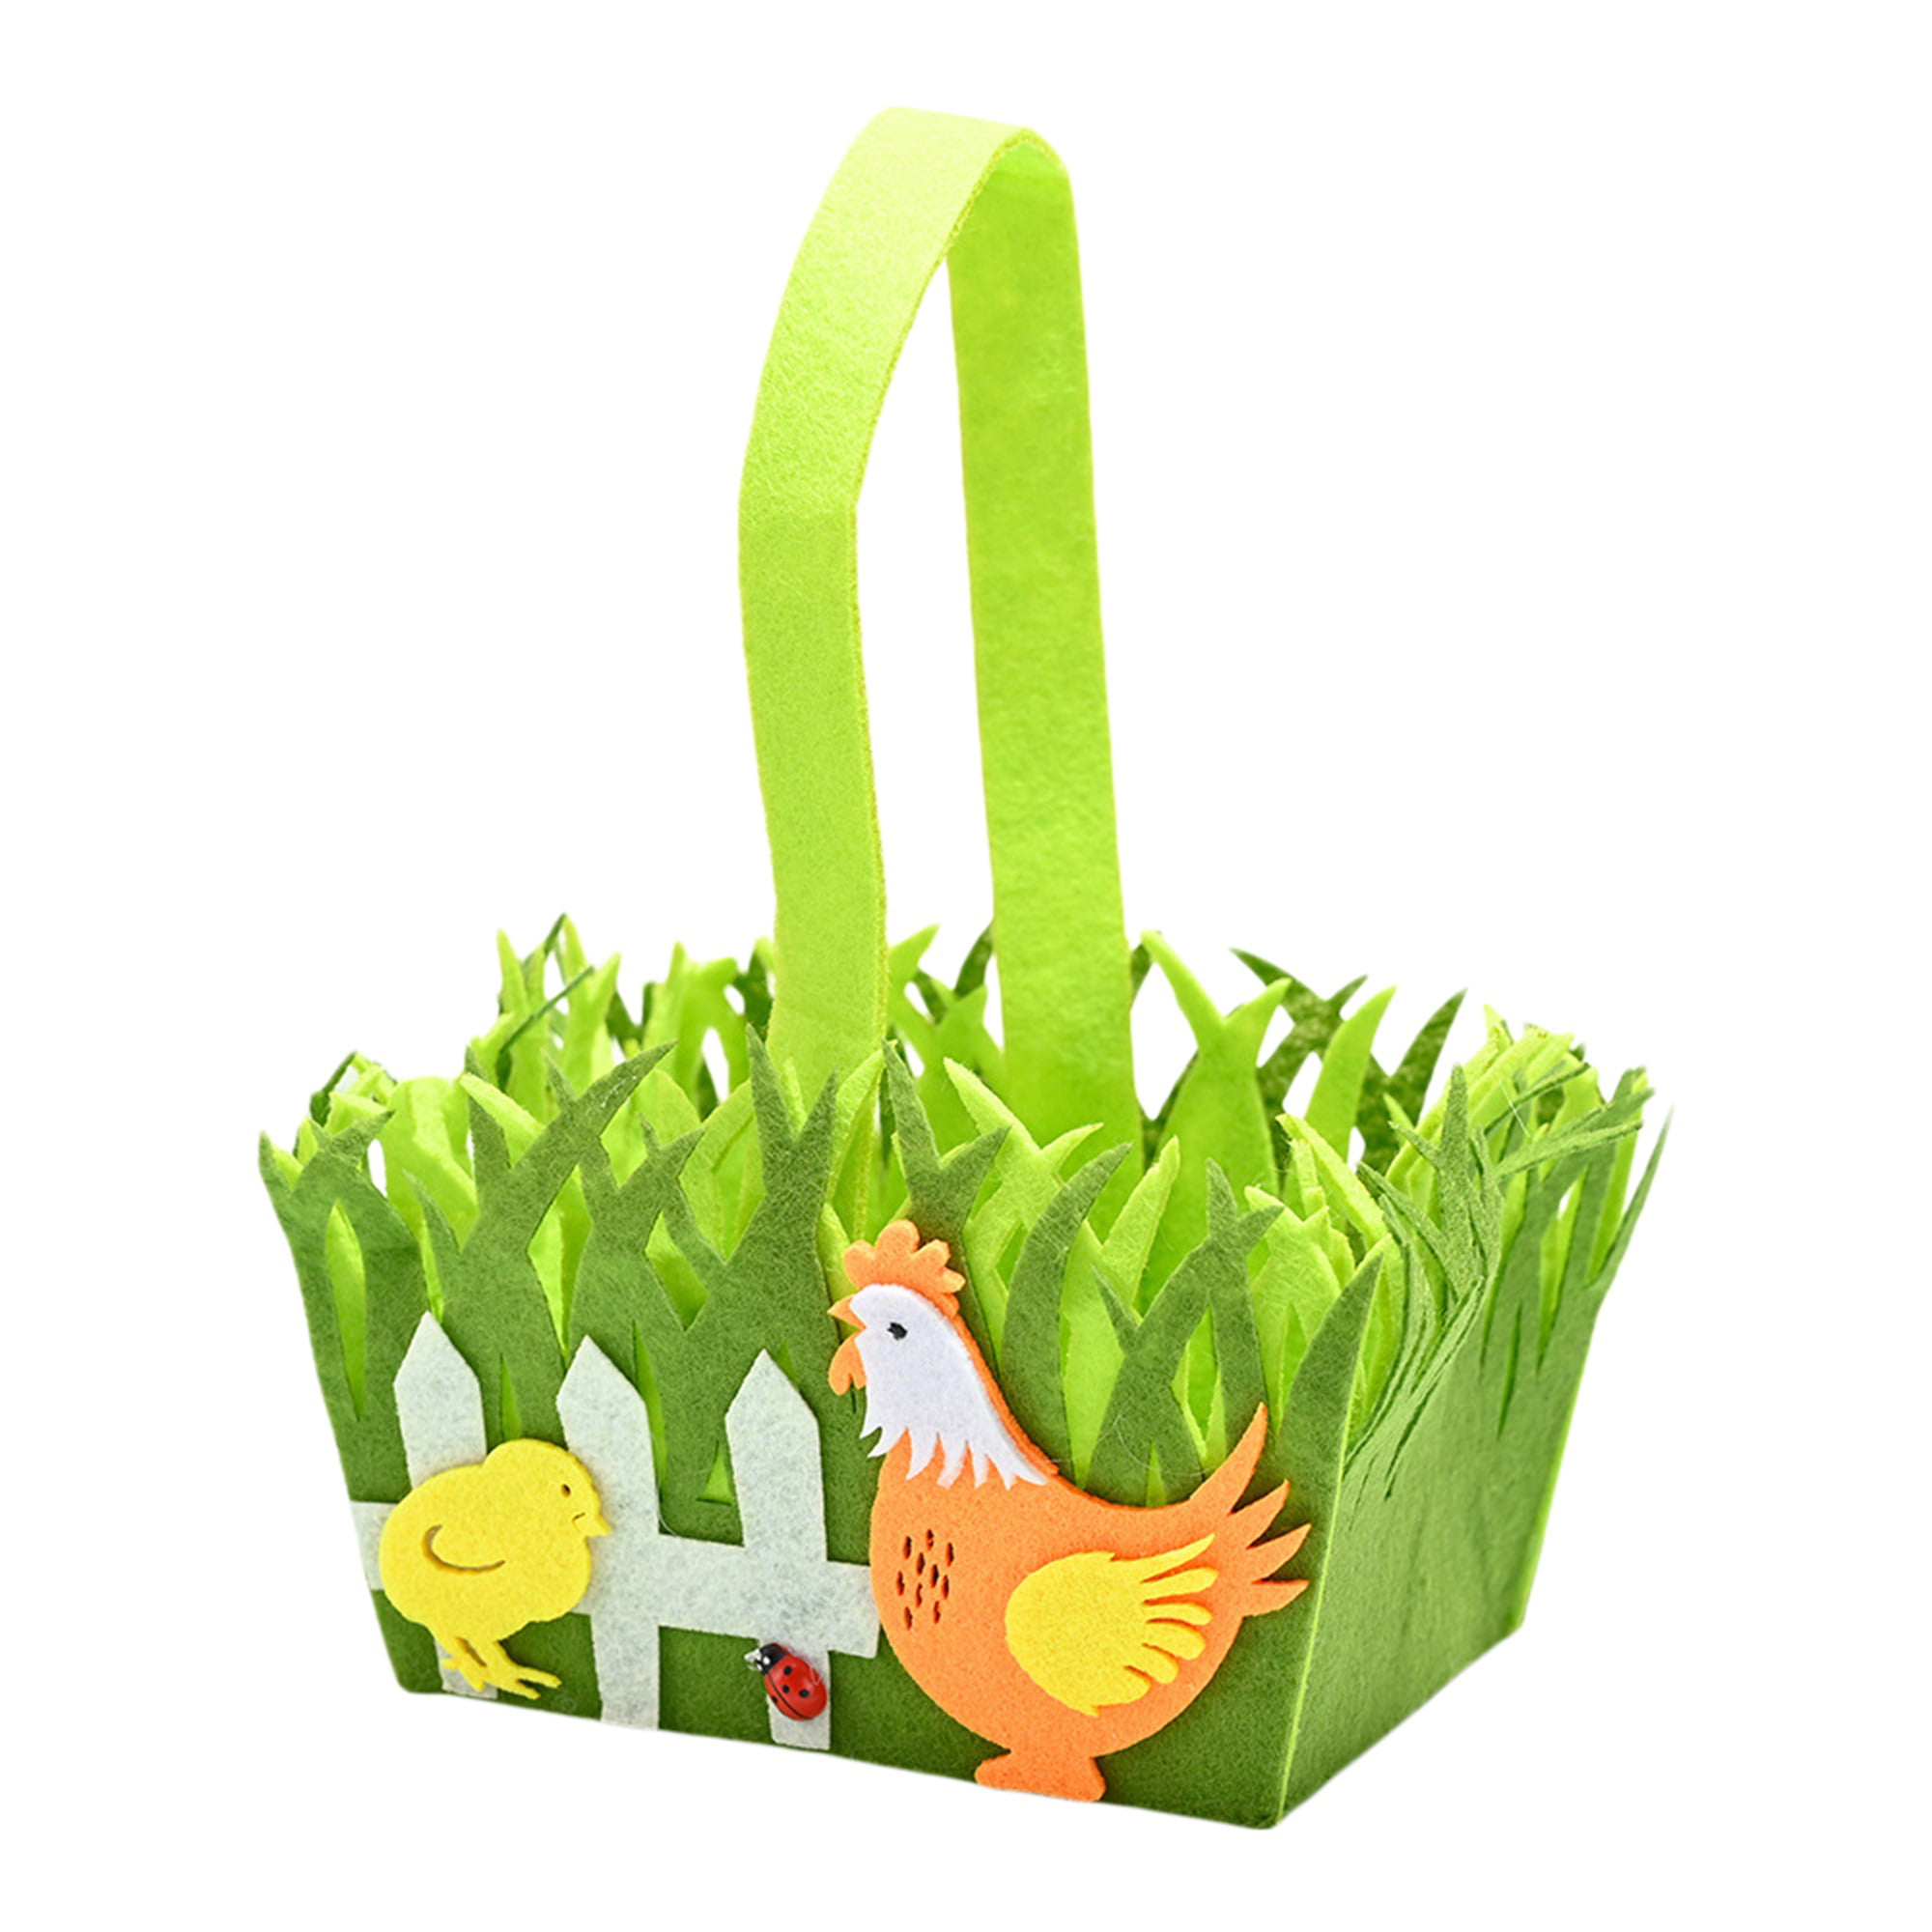 Vakantie Op de grond ik ontbijt Binpure Easter Eggs Basket, Square Shape Hen/Bunny Decorative Basket -  Walmart.com